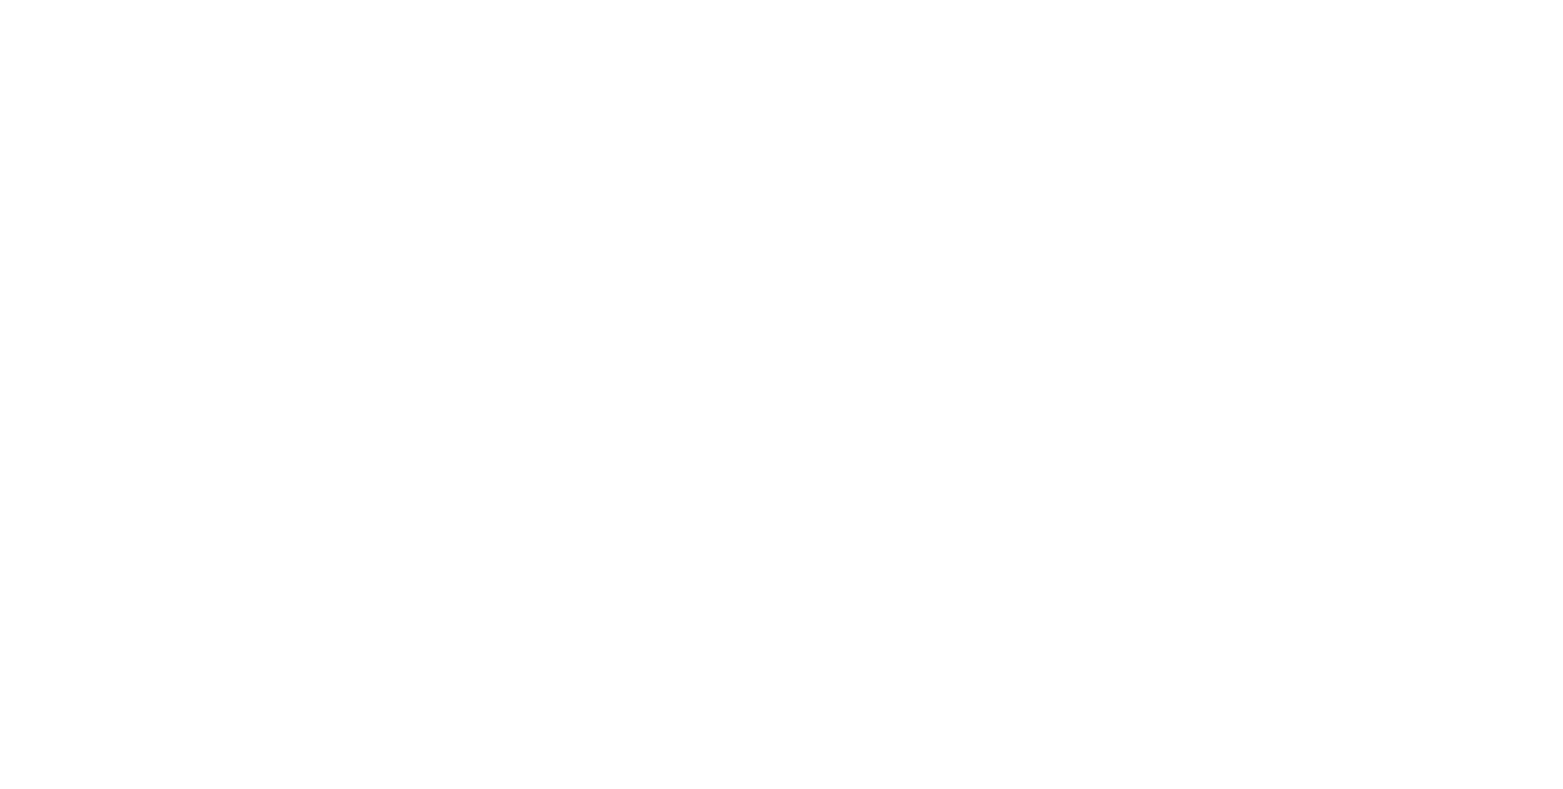 Villeroy & Boch logo large for dark backgrounds (transparent PNG)